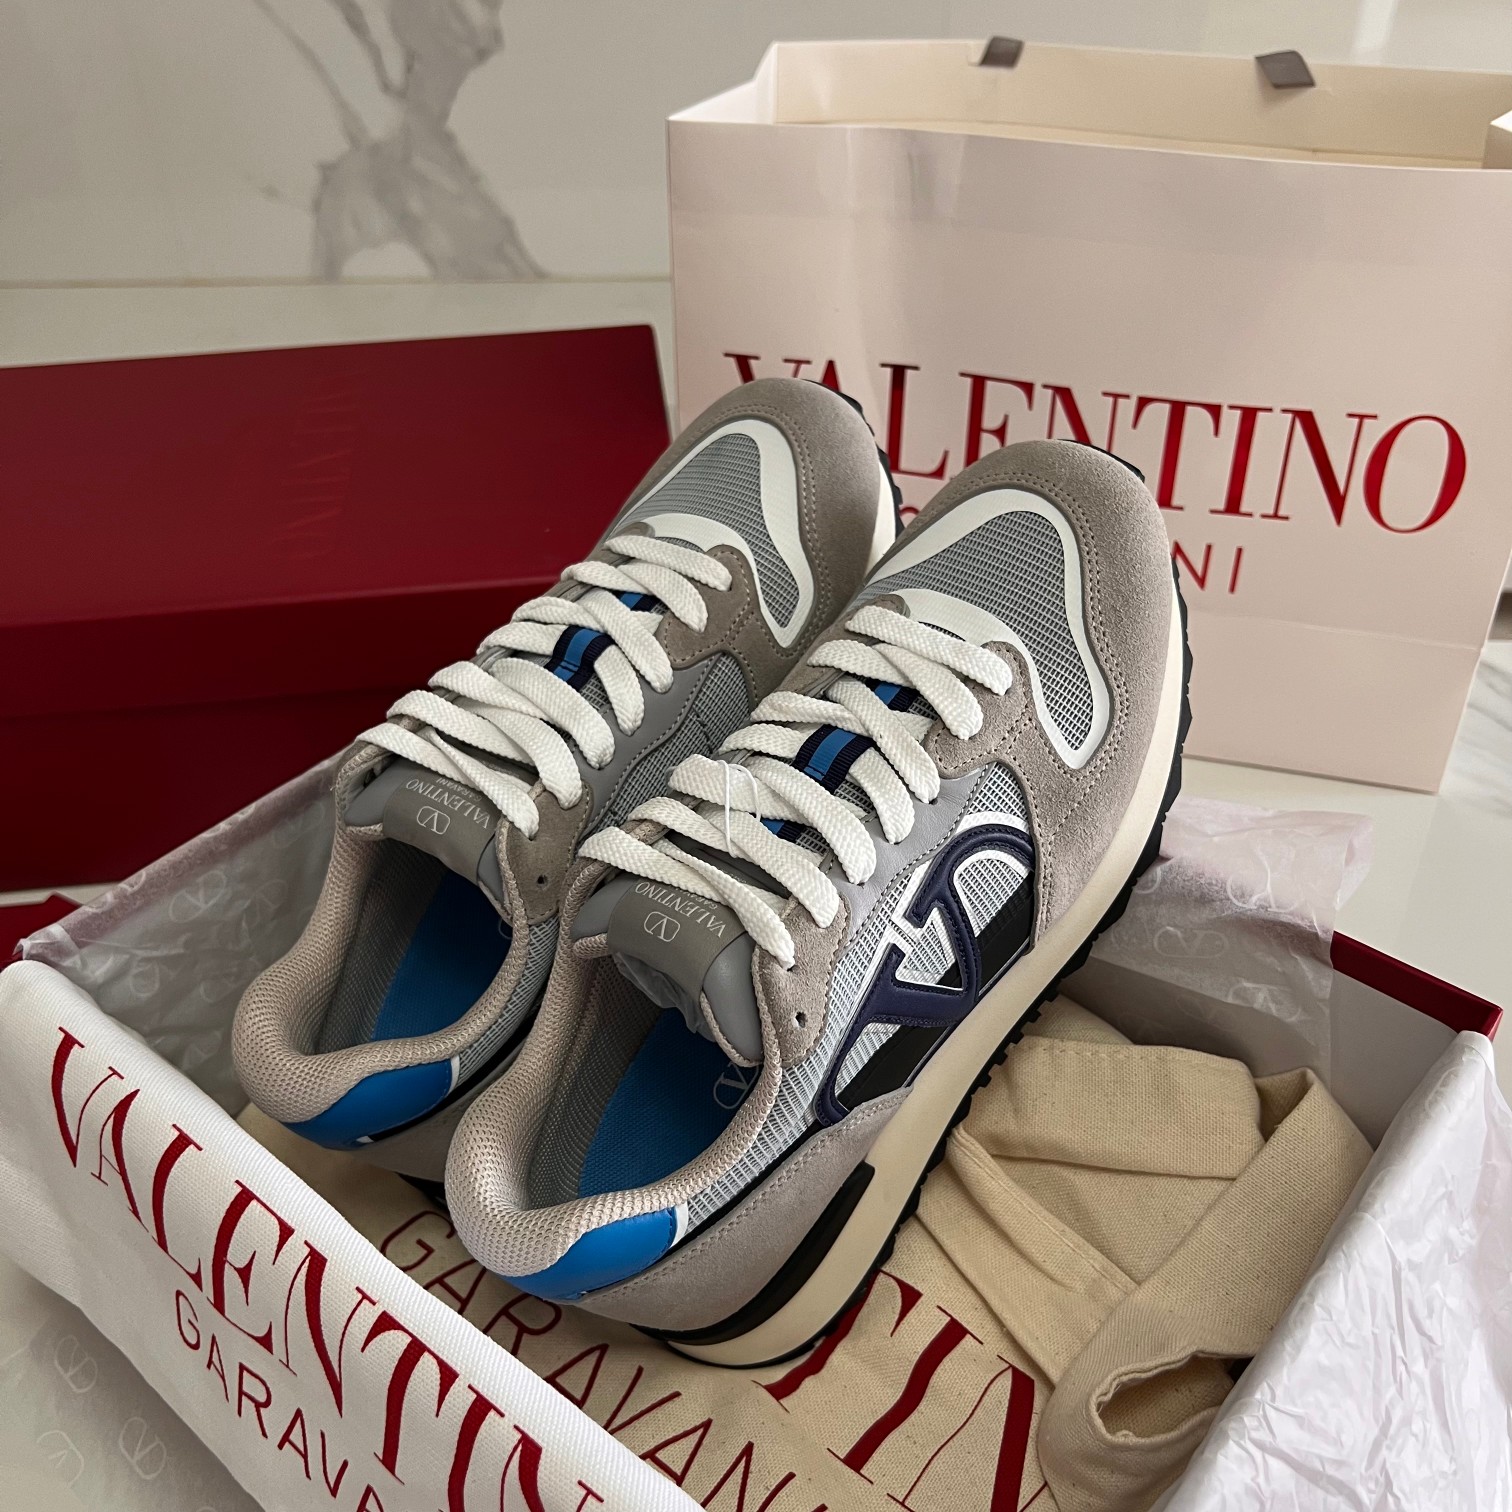 Valentino original 1:1 shoe model opening model original sneakers